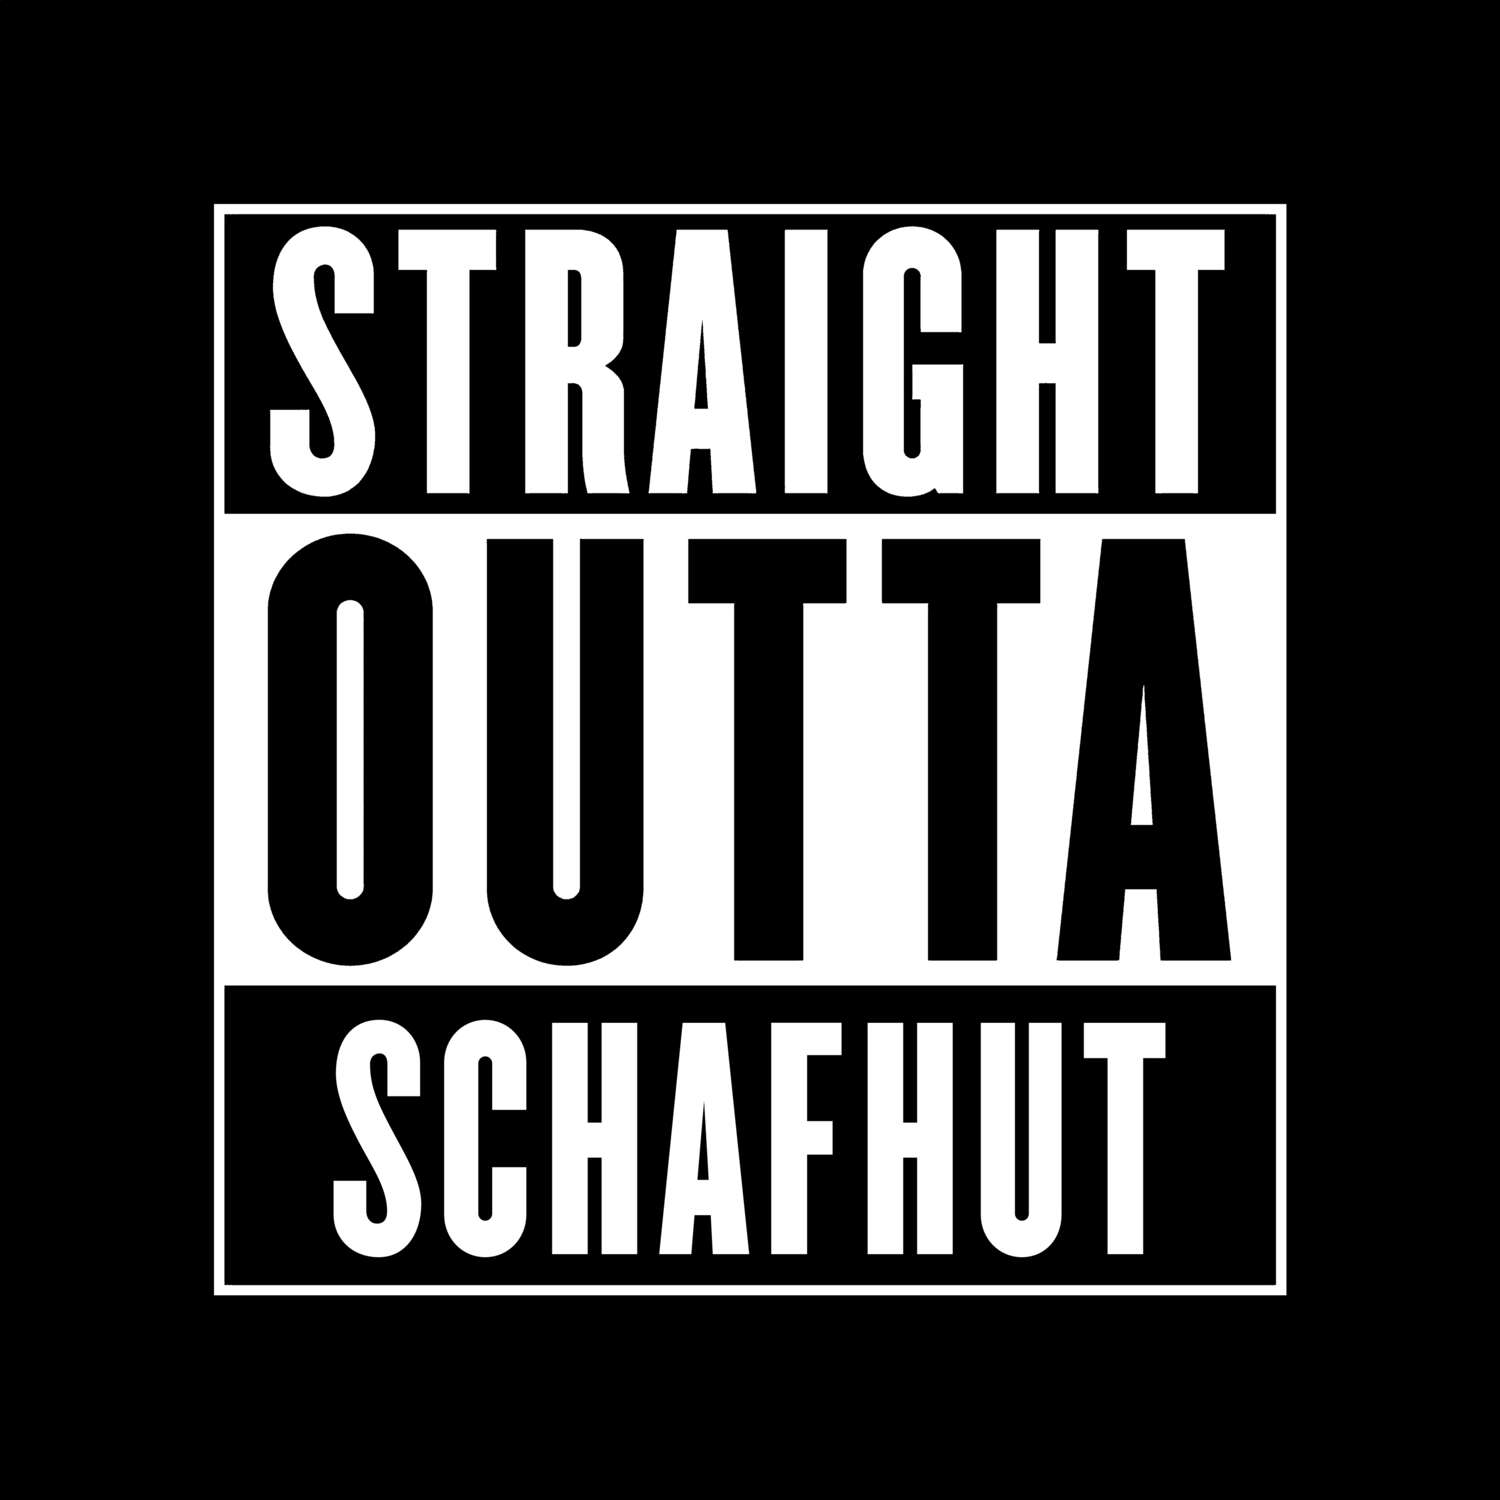 Schafhut T-Shirt »Straight Outta«